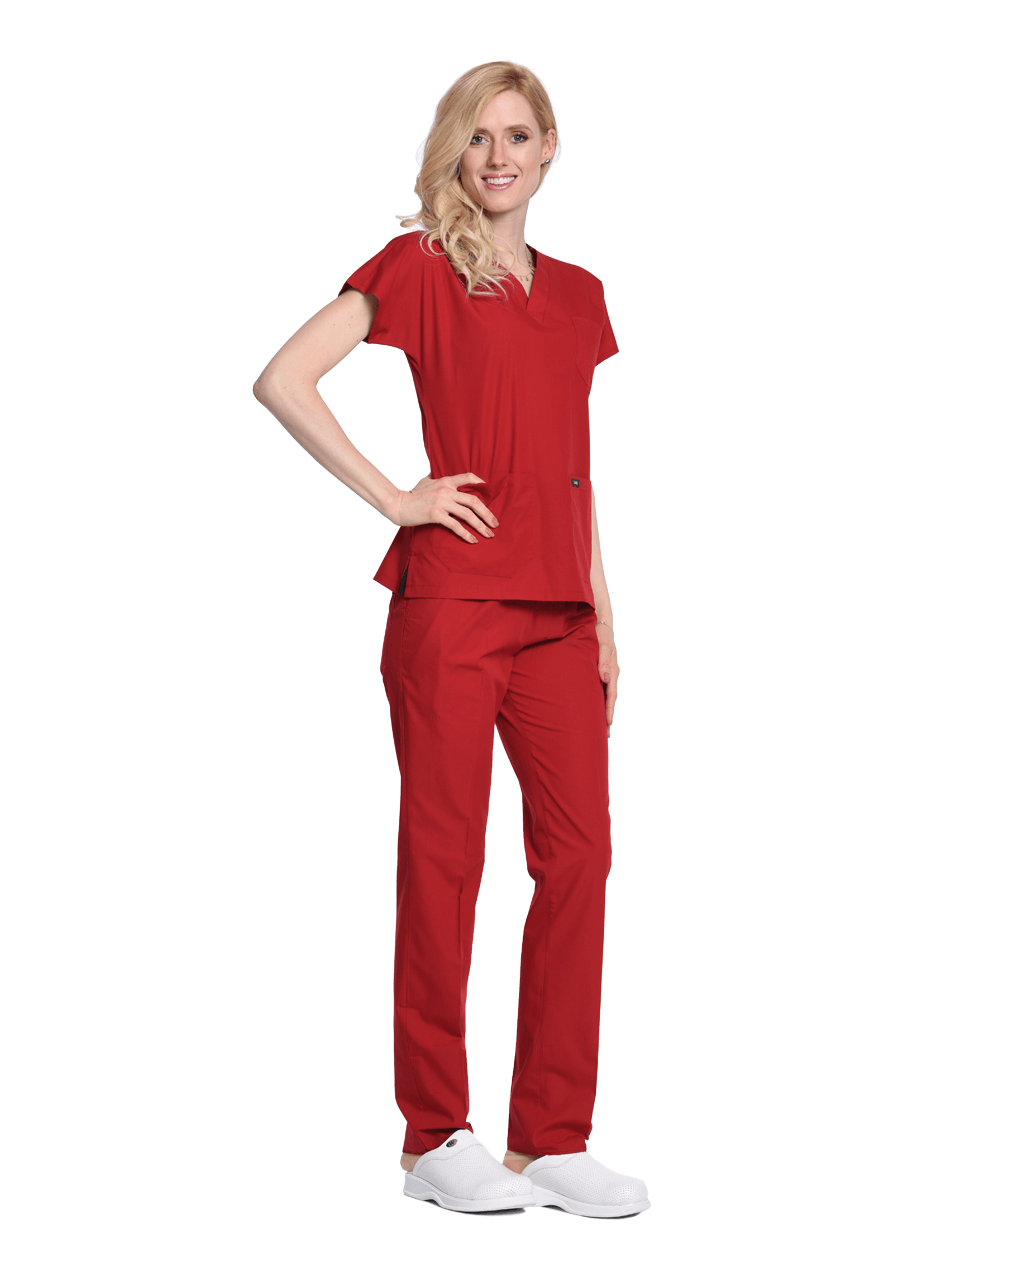 Kadın Terrycotton Kırmızı Doktor & Hemşire Forması Takımı